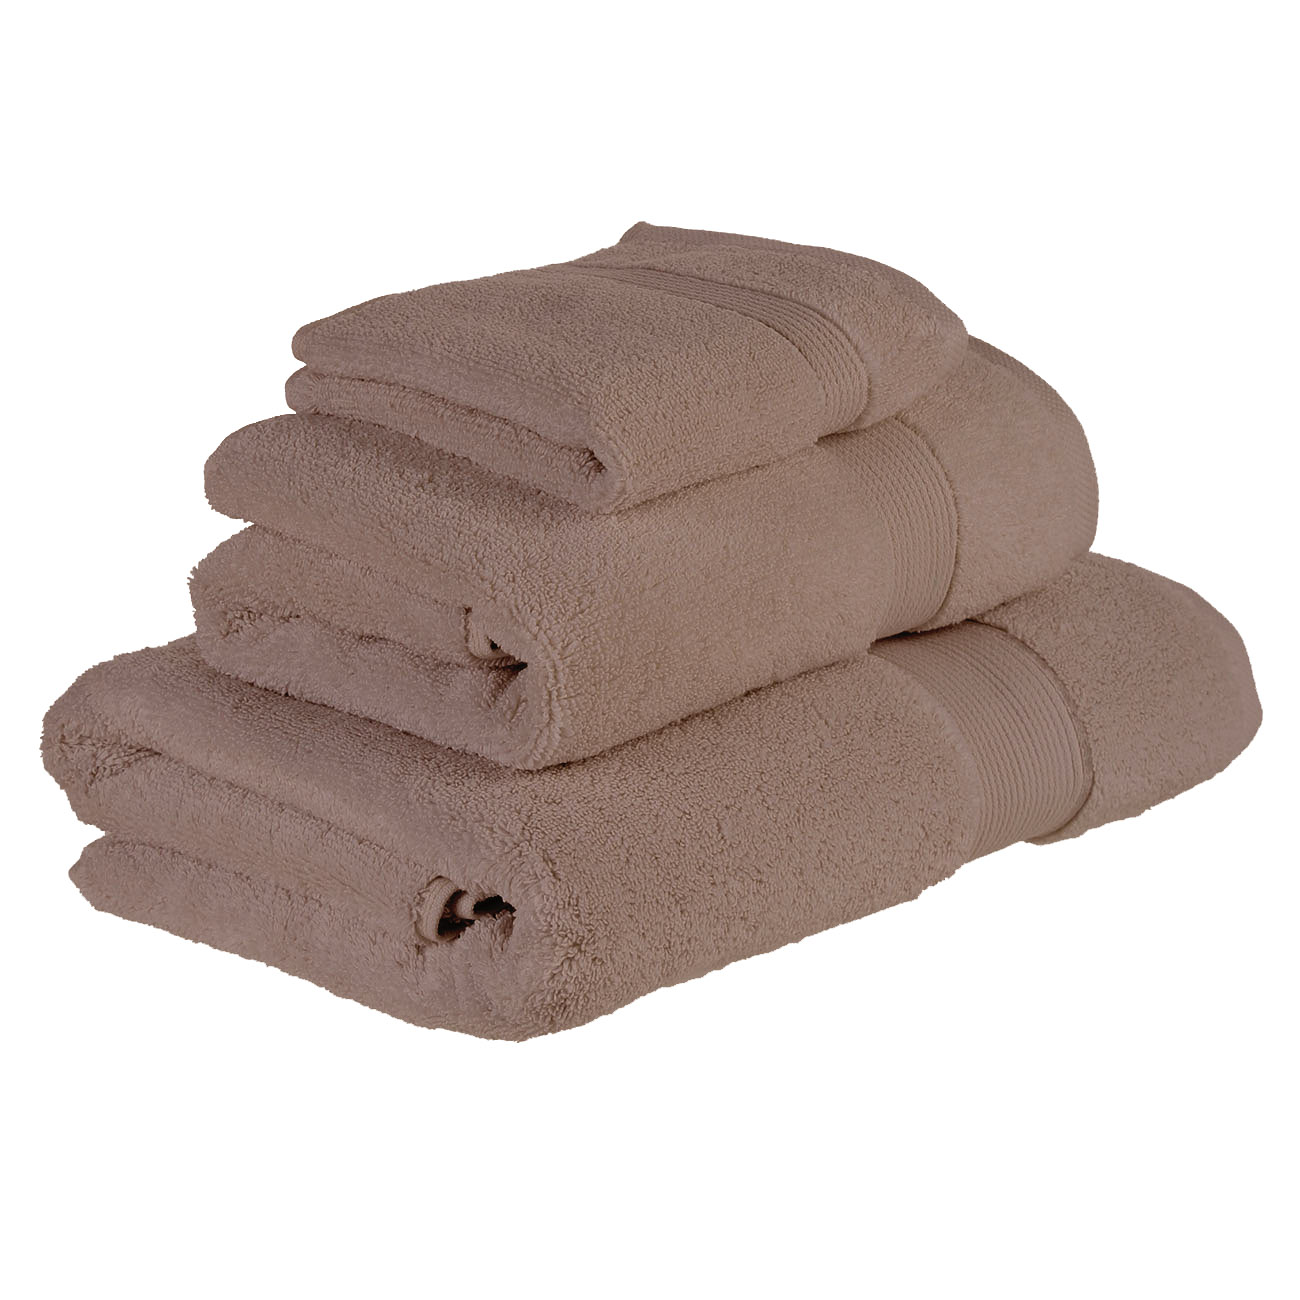 Комплект полотенец, 3 шт, 70x140/50x100/30x30 см, хлопок, коричневый, Cotton